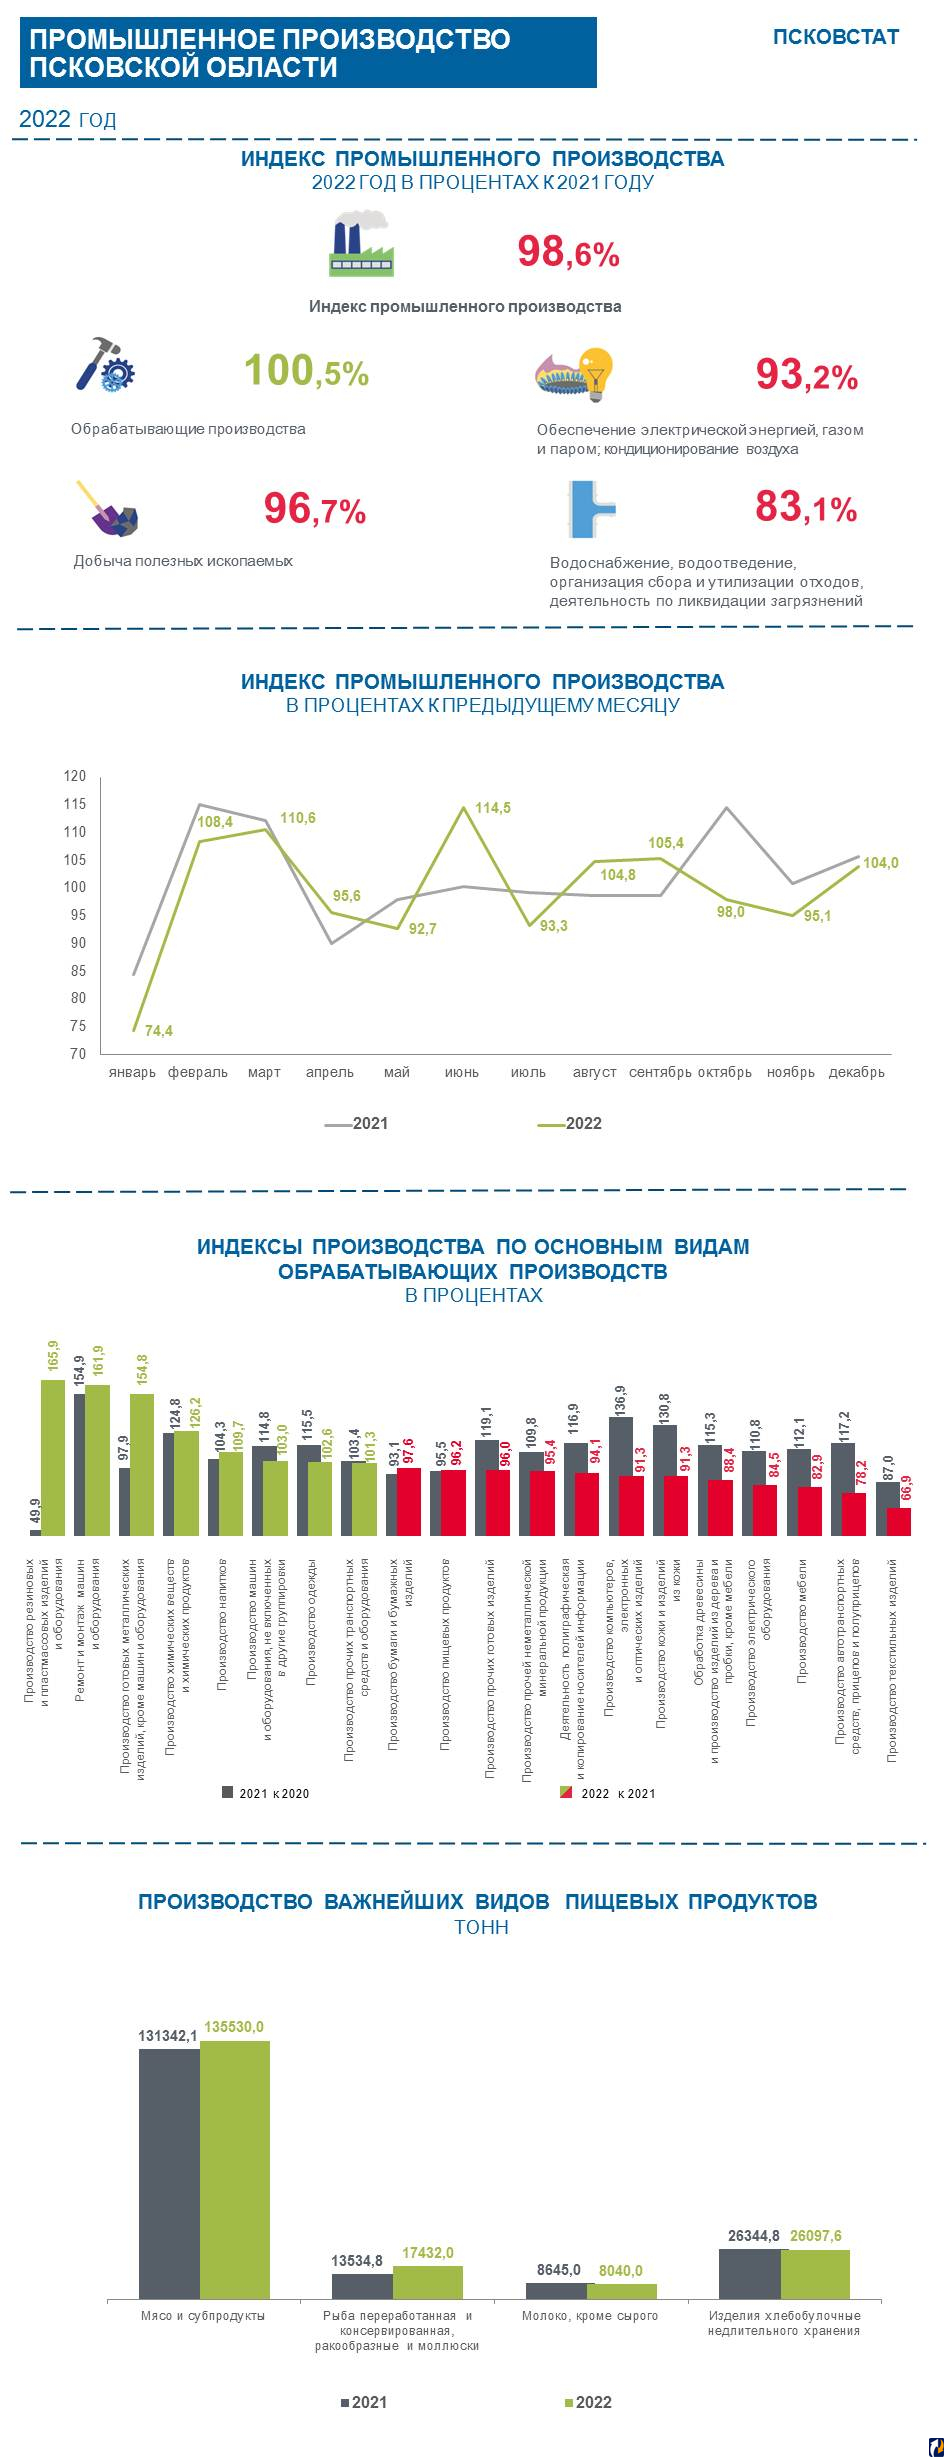 Статисты рассказали про промышленное производство в Псковской области